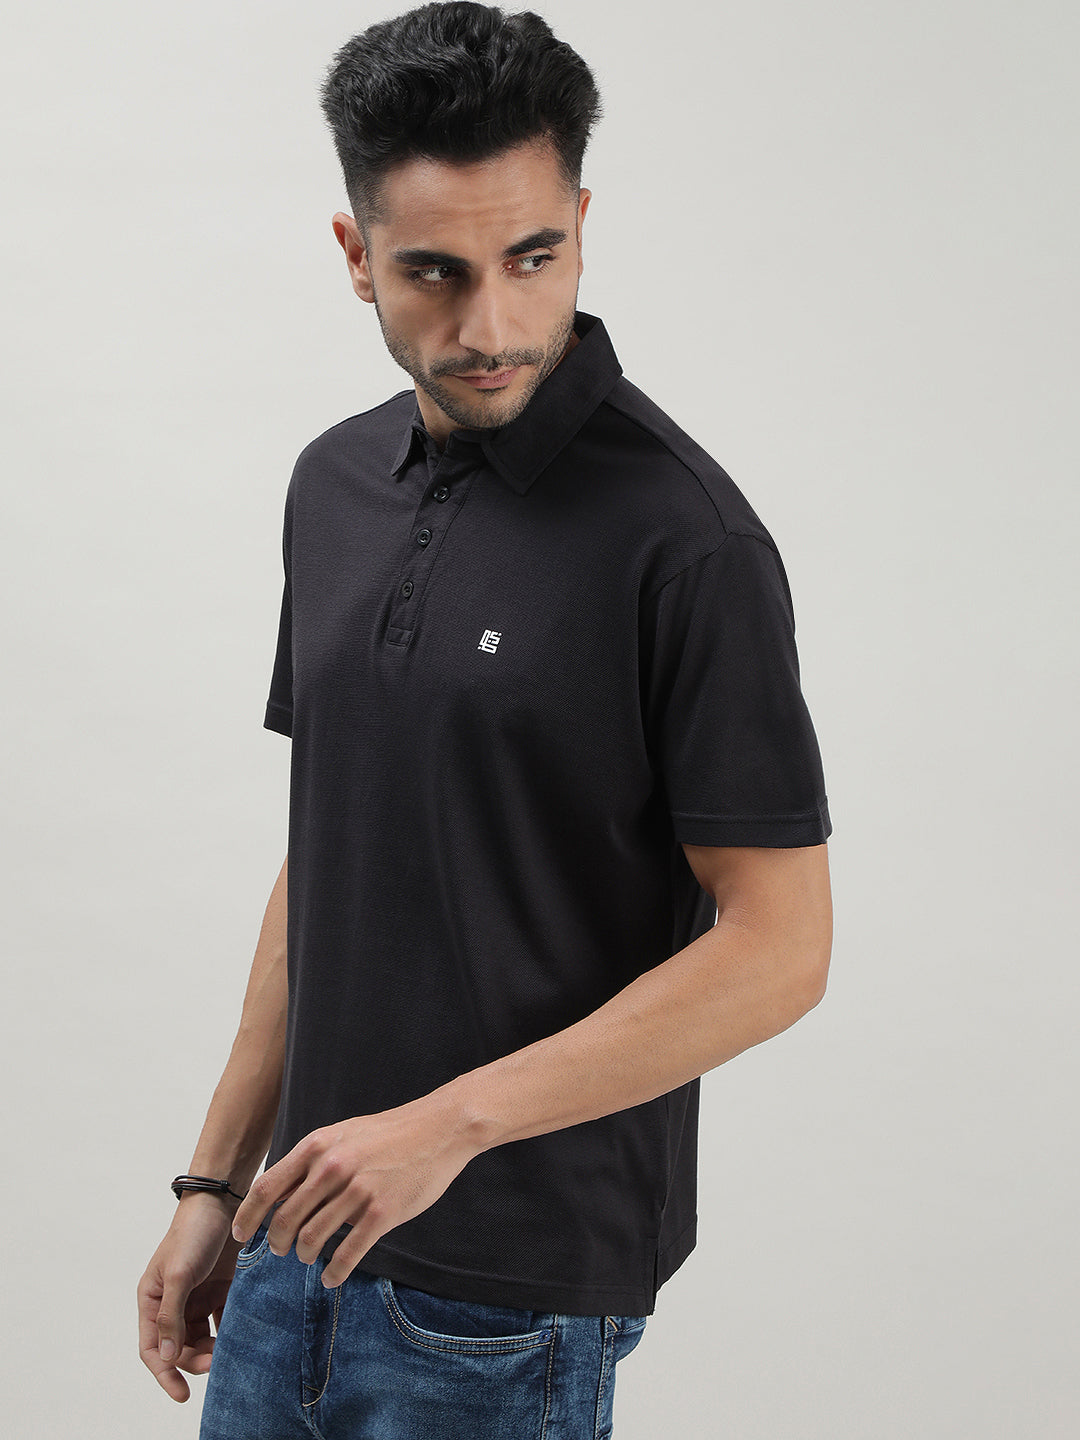 Black Mercerized Polo T-shirt for Men